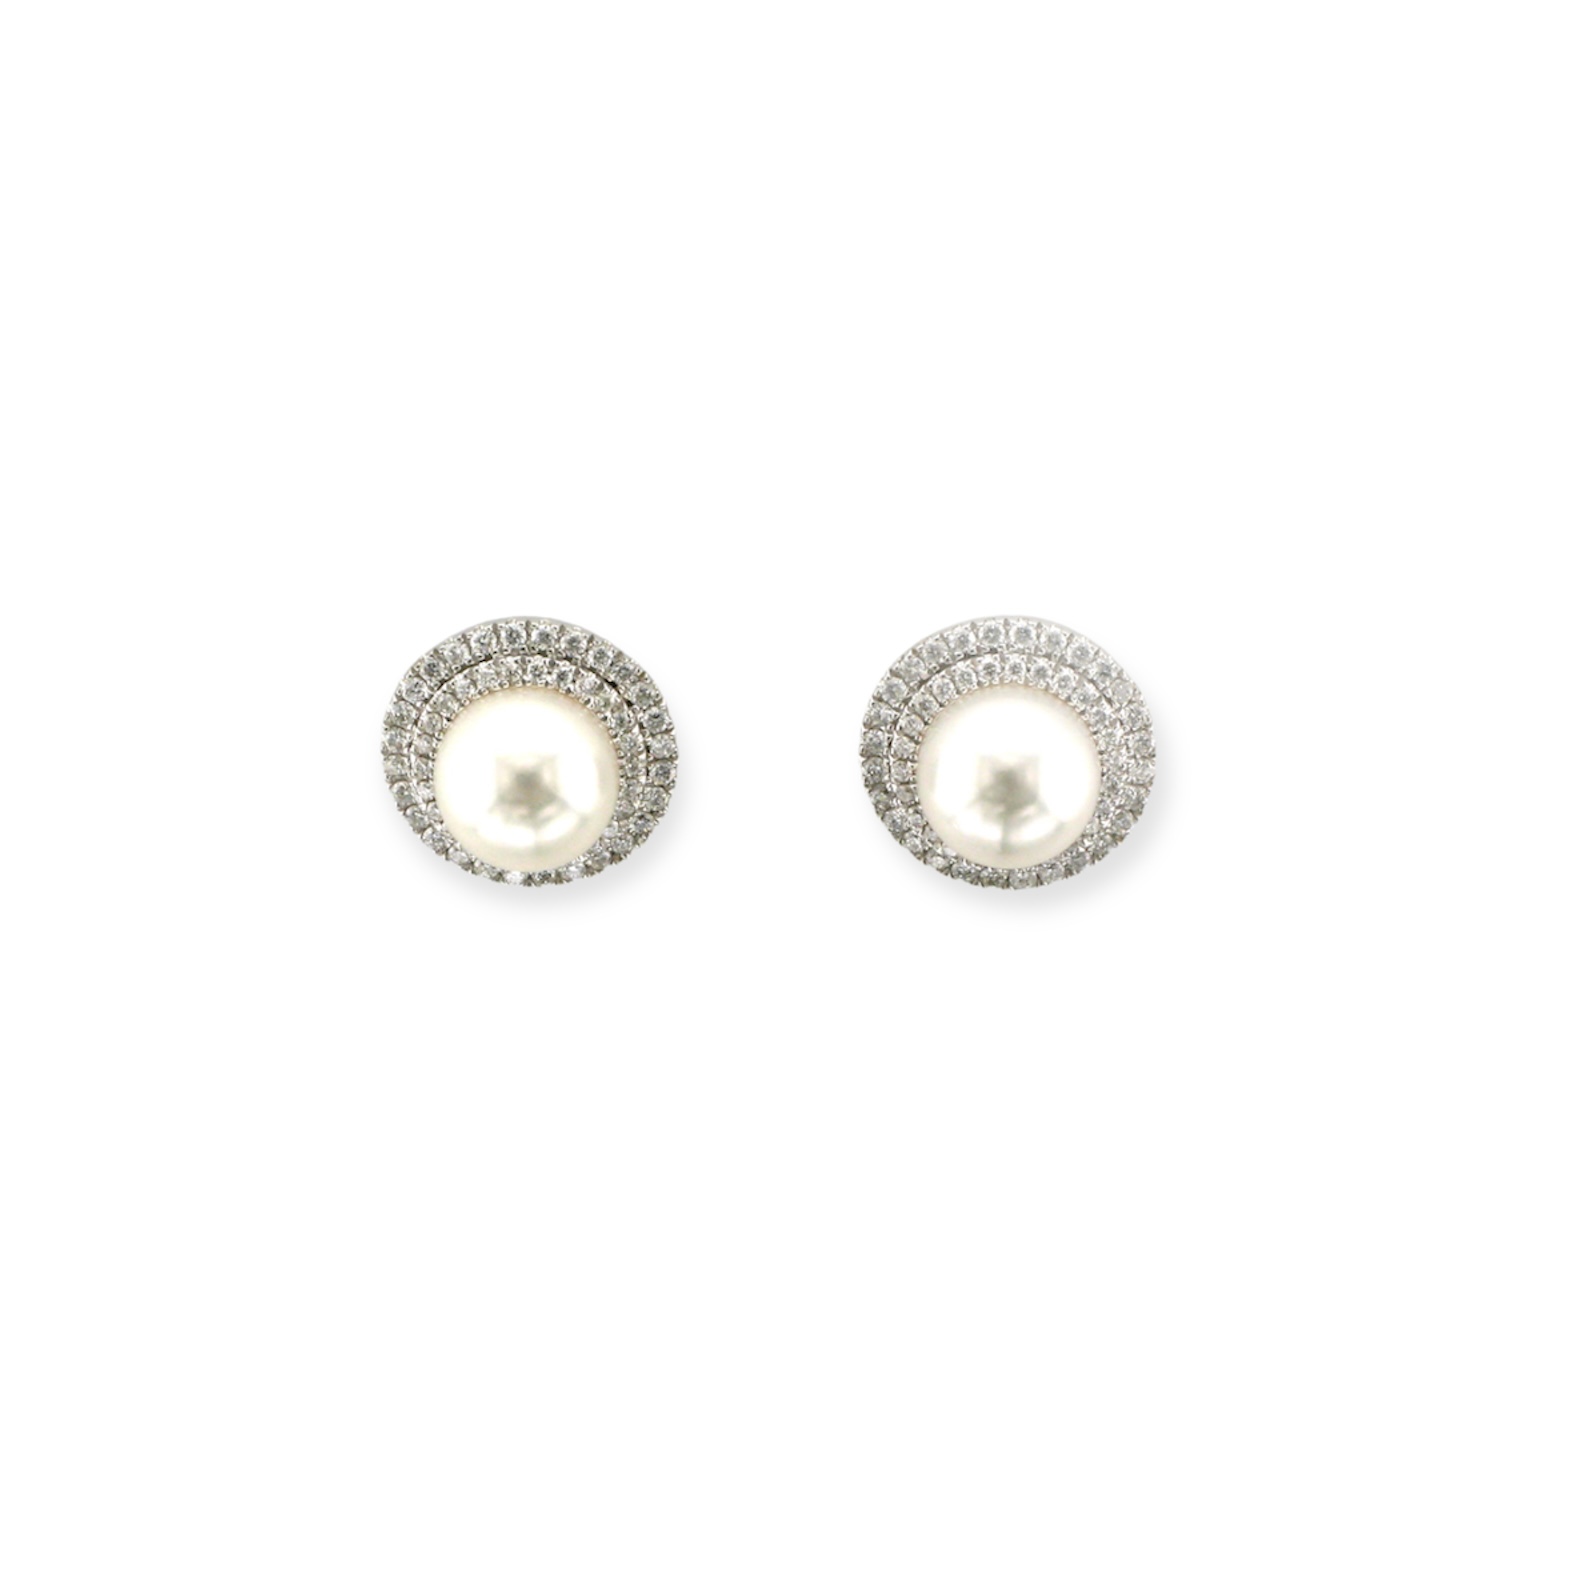 Double Halo Pearl Earrings